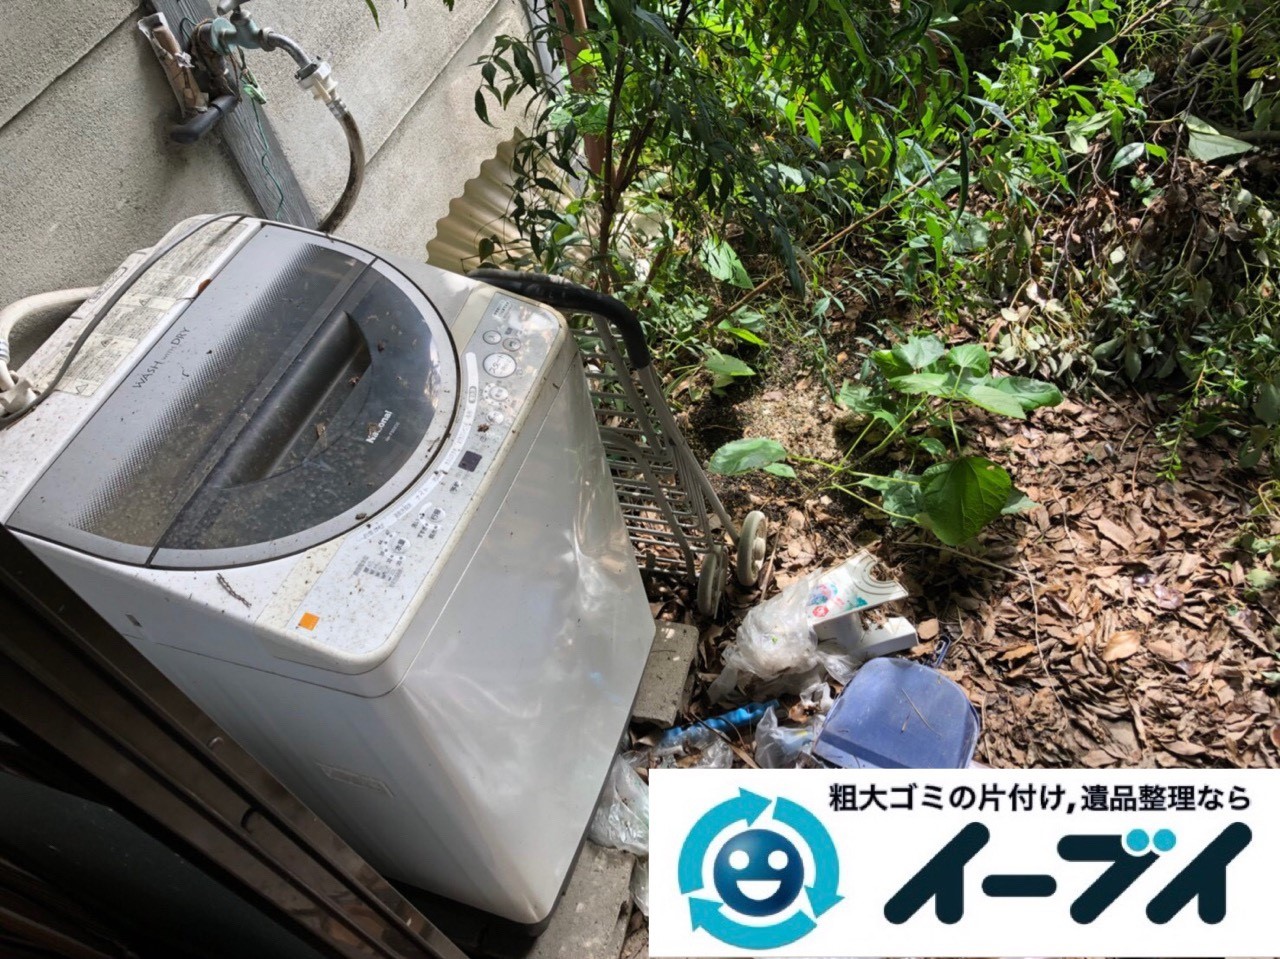 2018年11月26日大阪府大阪市淀川区でお庭の不用品の回収やお片付けのご依頼を頂きました。写真3